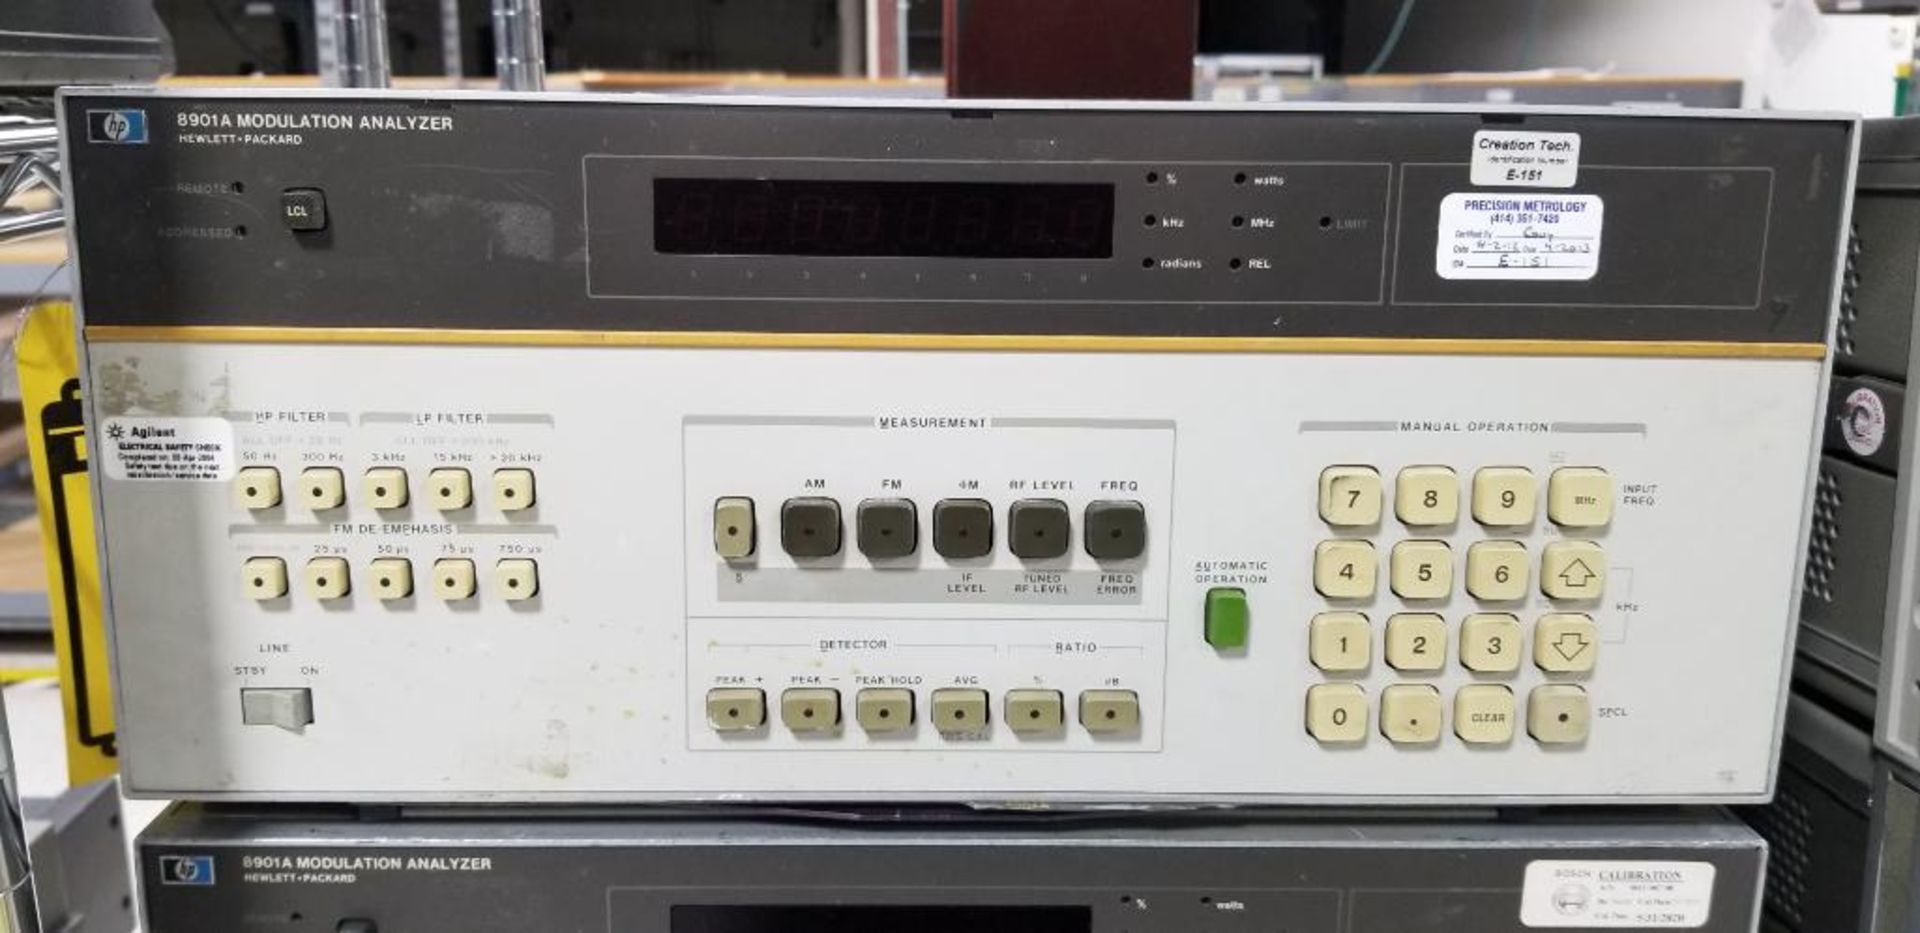 (4x) Hewlett Packard Modulation Analyzers, Model 8901A - Image 4 of 7